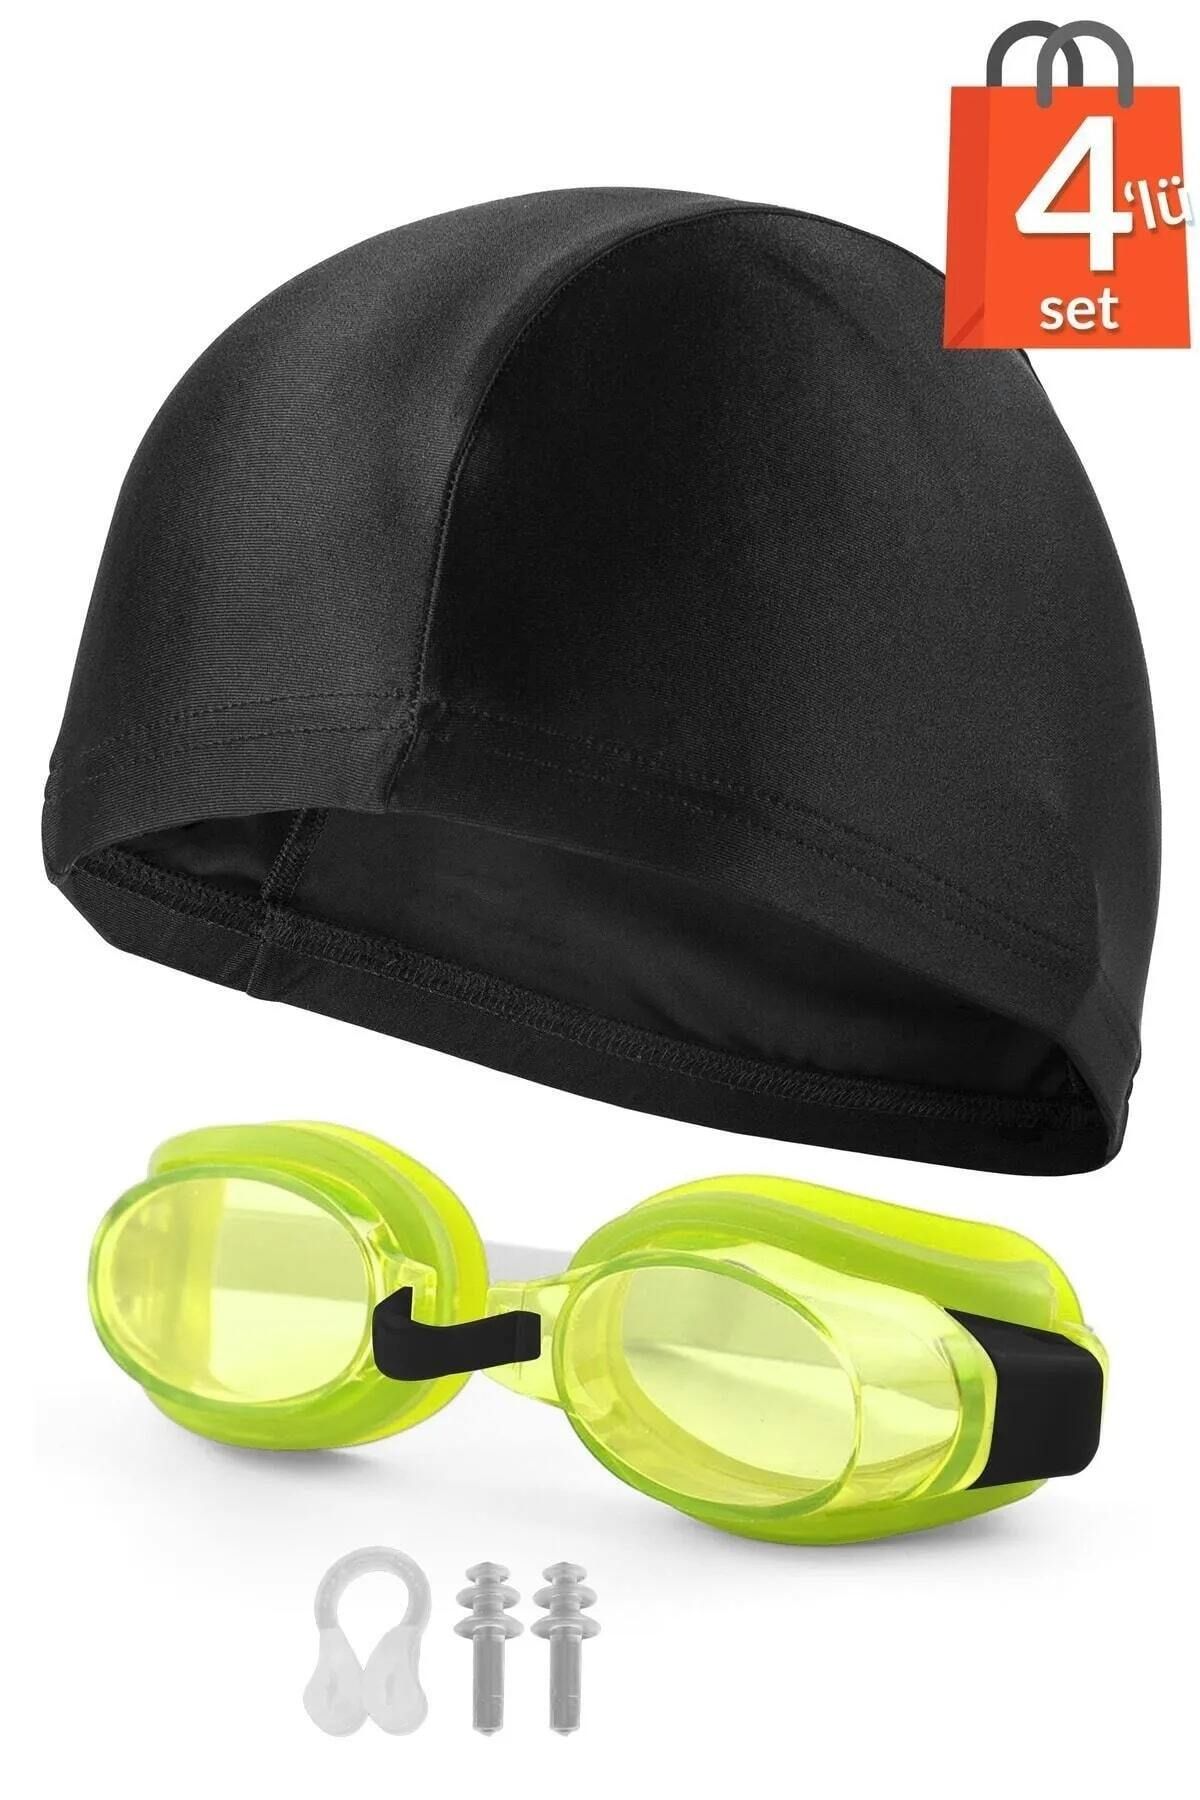 Ozsport 4lü Set Yüzücü Gözlüğü Kumaş Bone Kulak Ve Burun Tıkaçlı Set Yüzme Havuz Deniz Gözlüğü Sarı